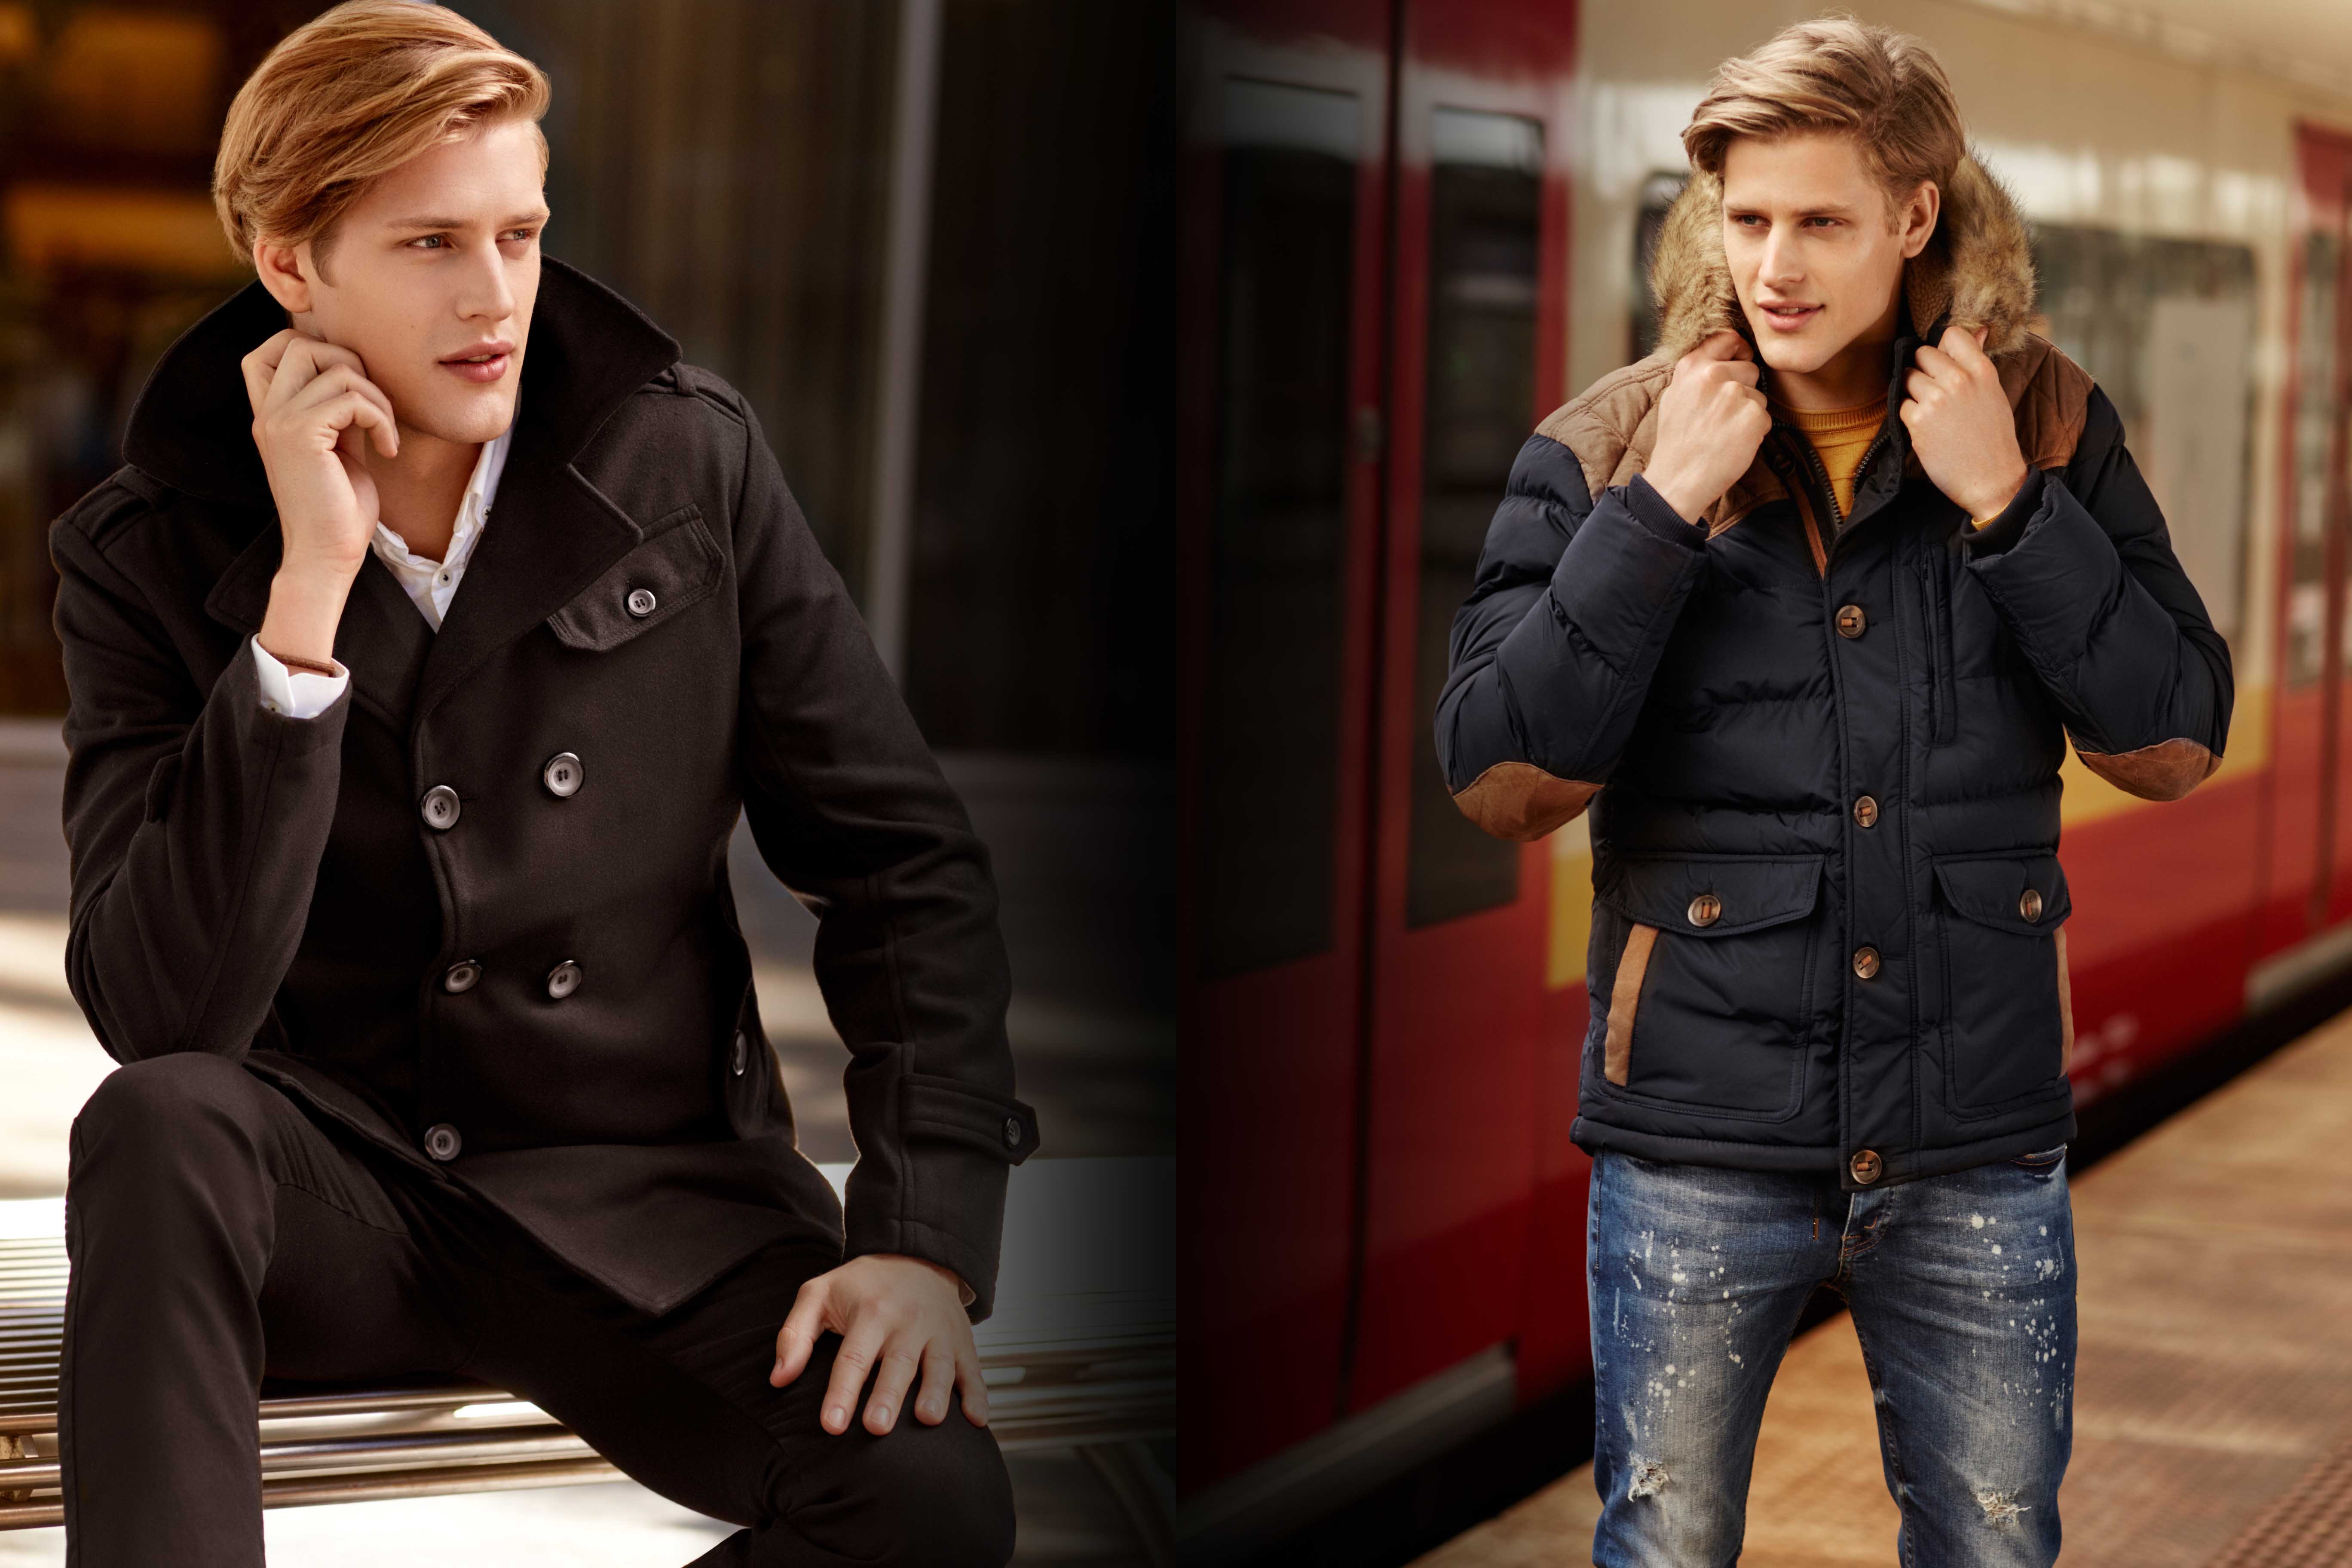 Ein Mantel oder eine Winterjacke? – Womit bist du stylish und komfortabel gekleidet?